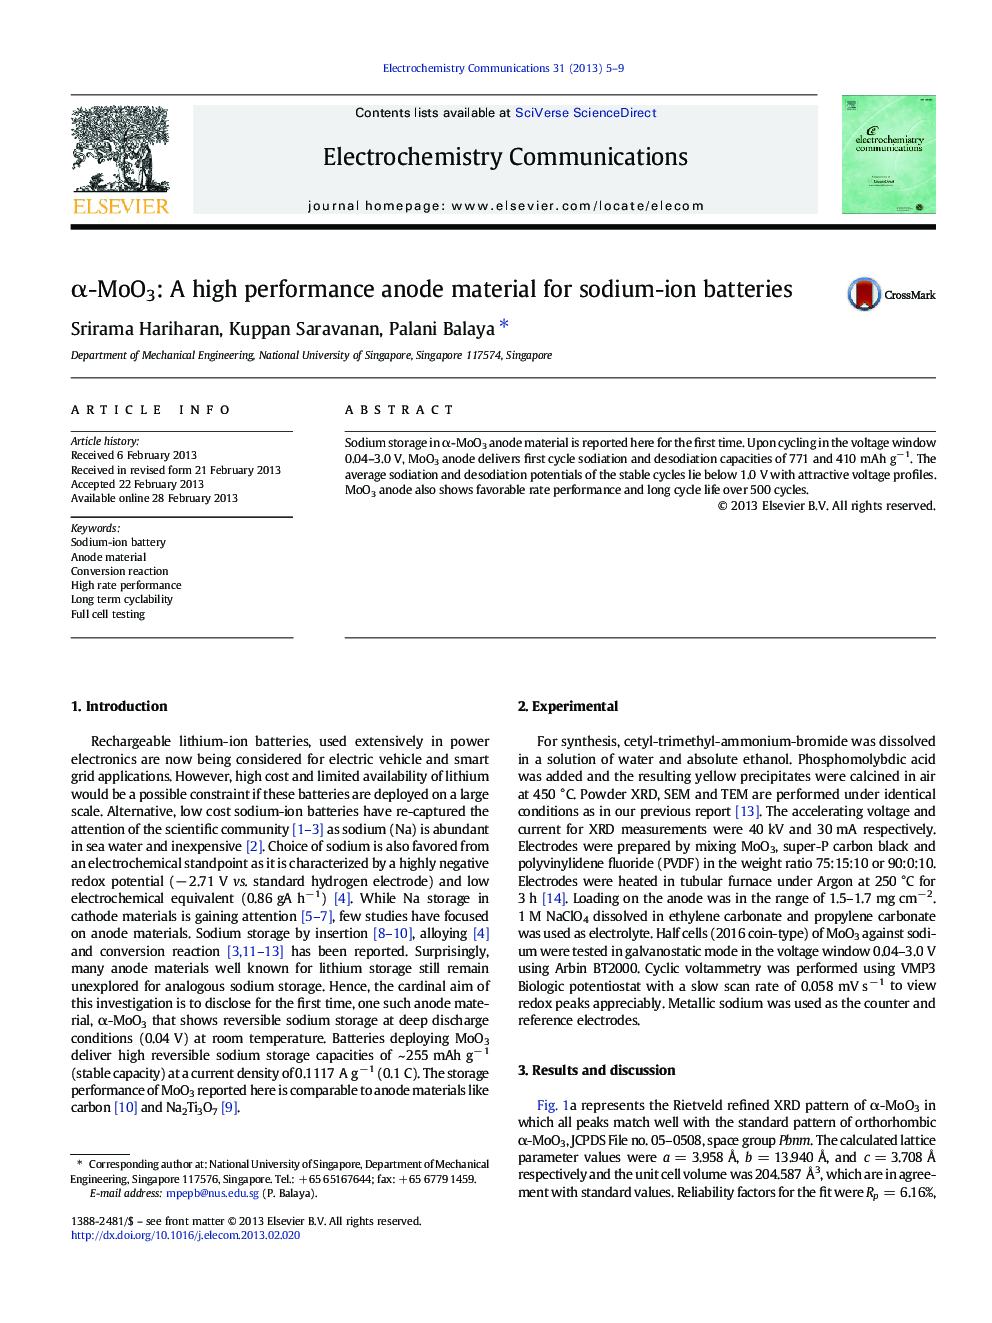 α-MoO3: A high performance anode material for sodium-ion batteries